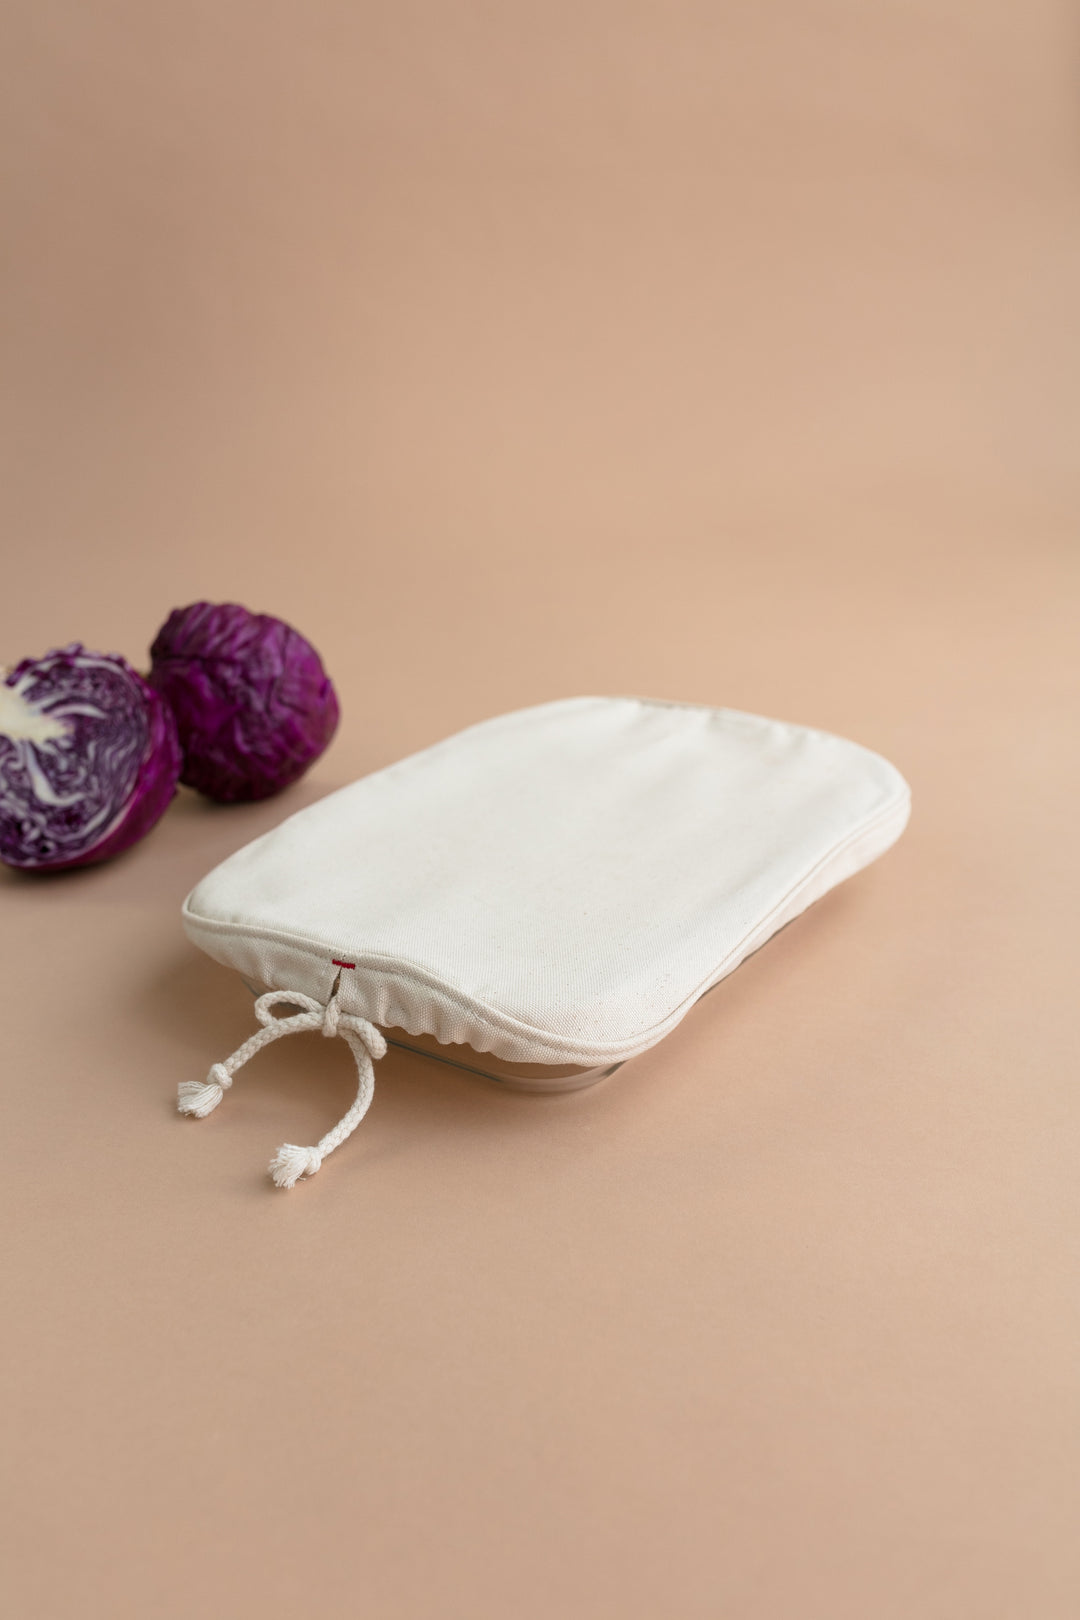 Reusable Organic Cotton Bowl and Pan Covers – Aplat